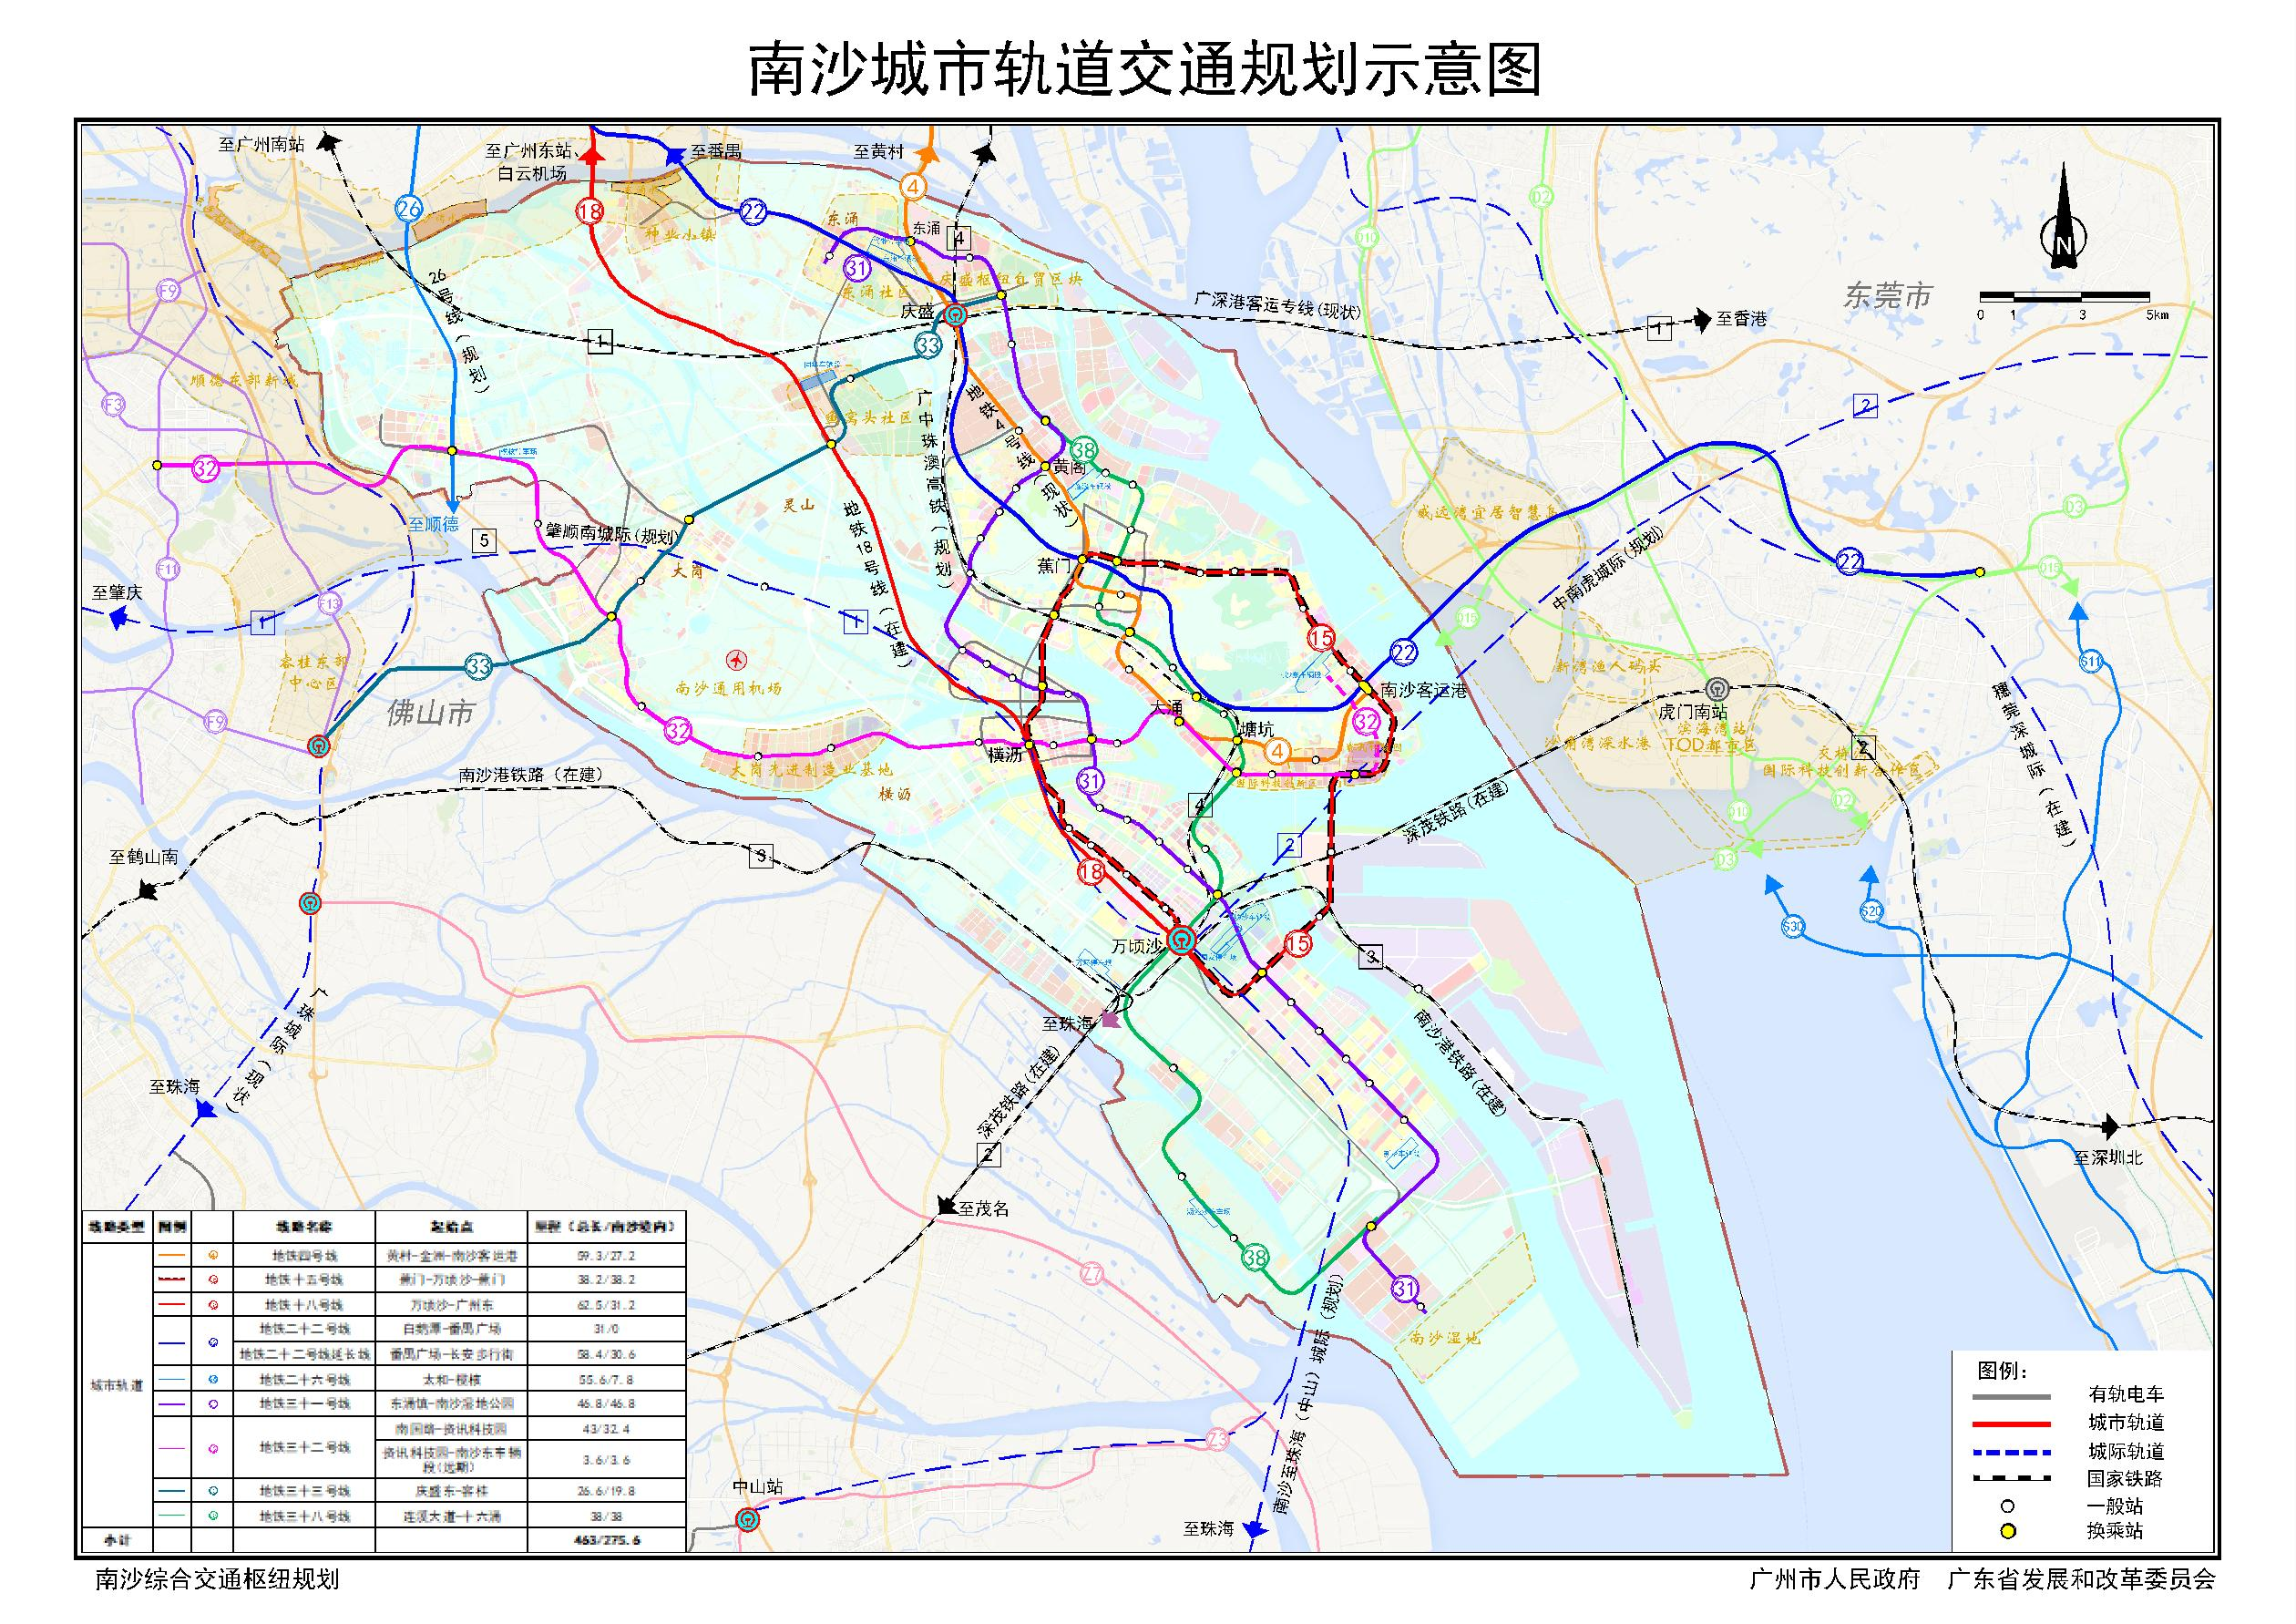 两高铁连接深圳!2021年,广州南沙南沙综合交通枢纽规划印发